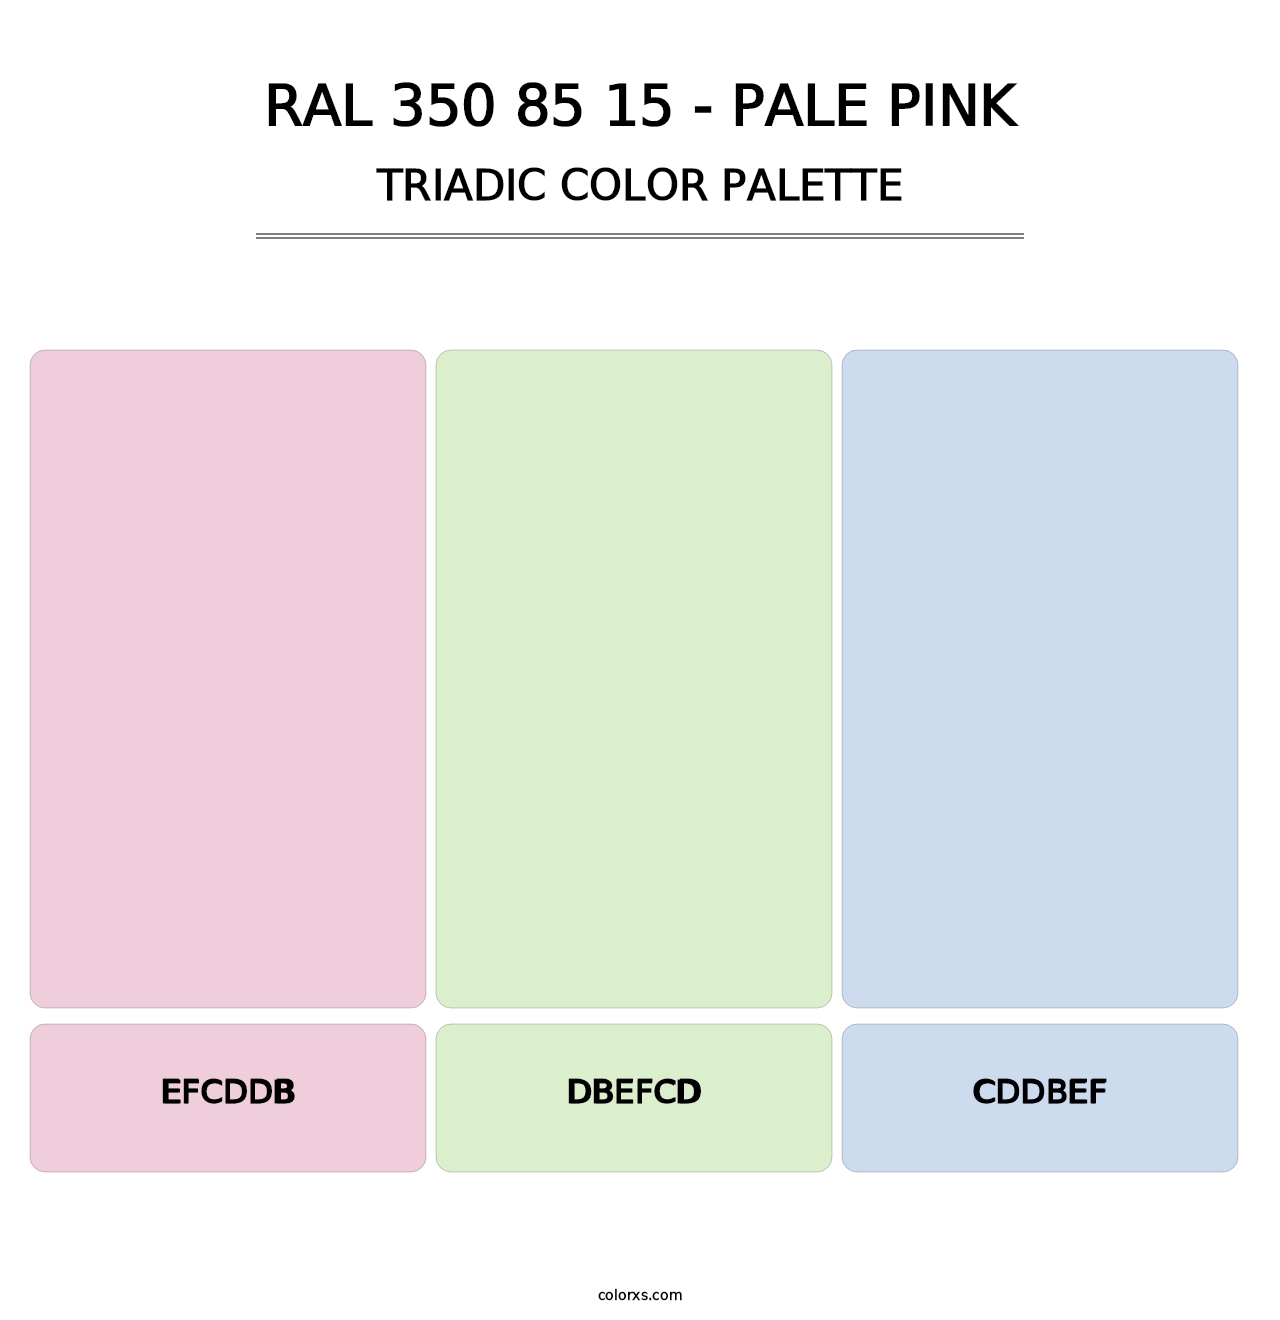 RAL 350 85 15 - Pale Pink - Triadic Color Palette